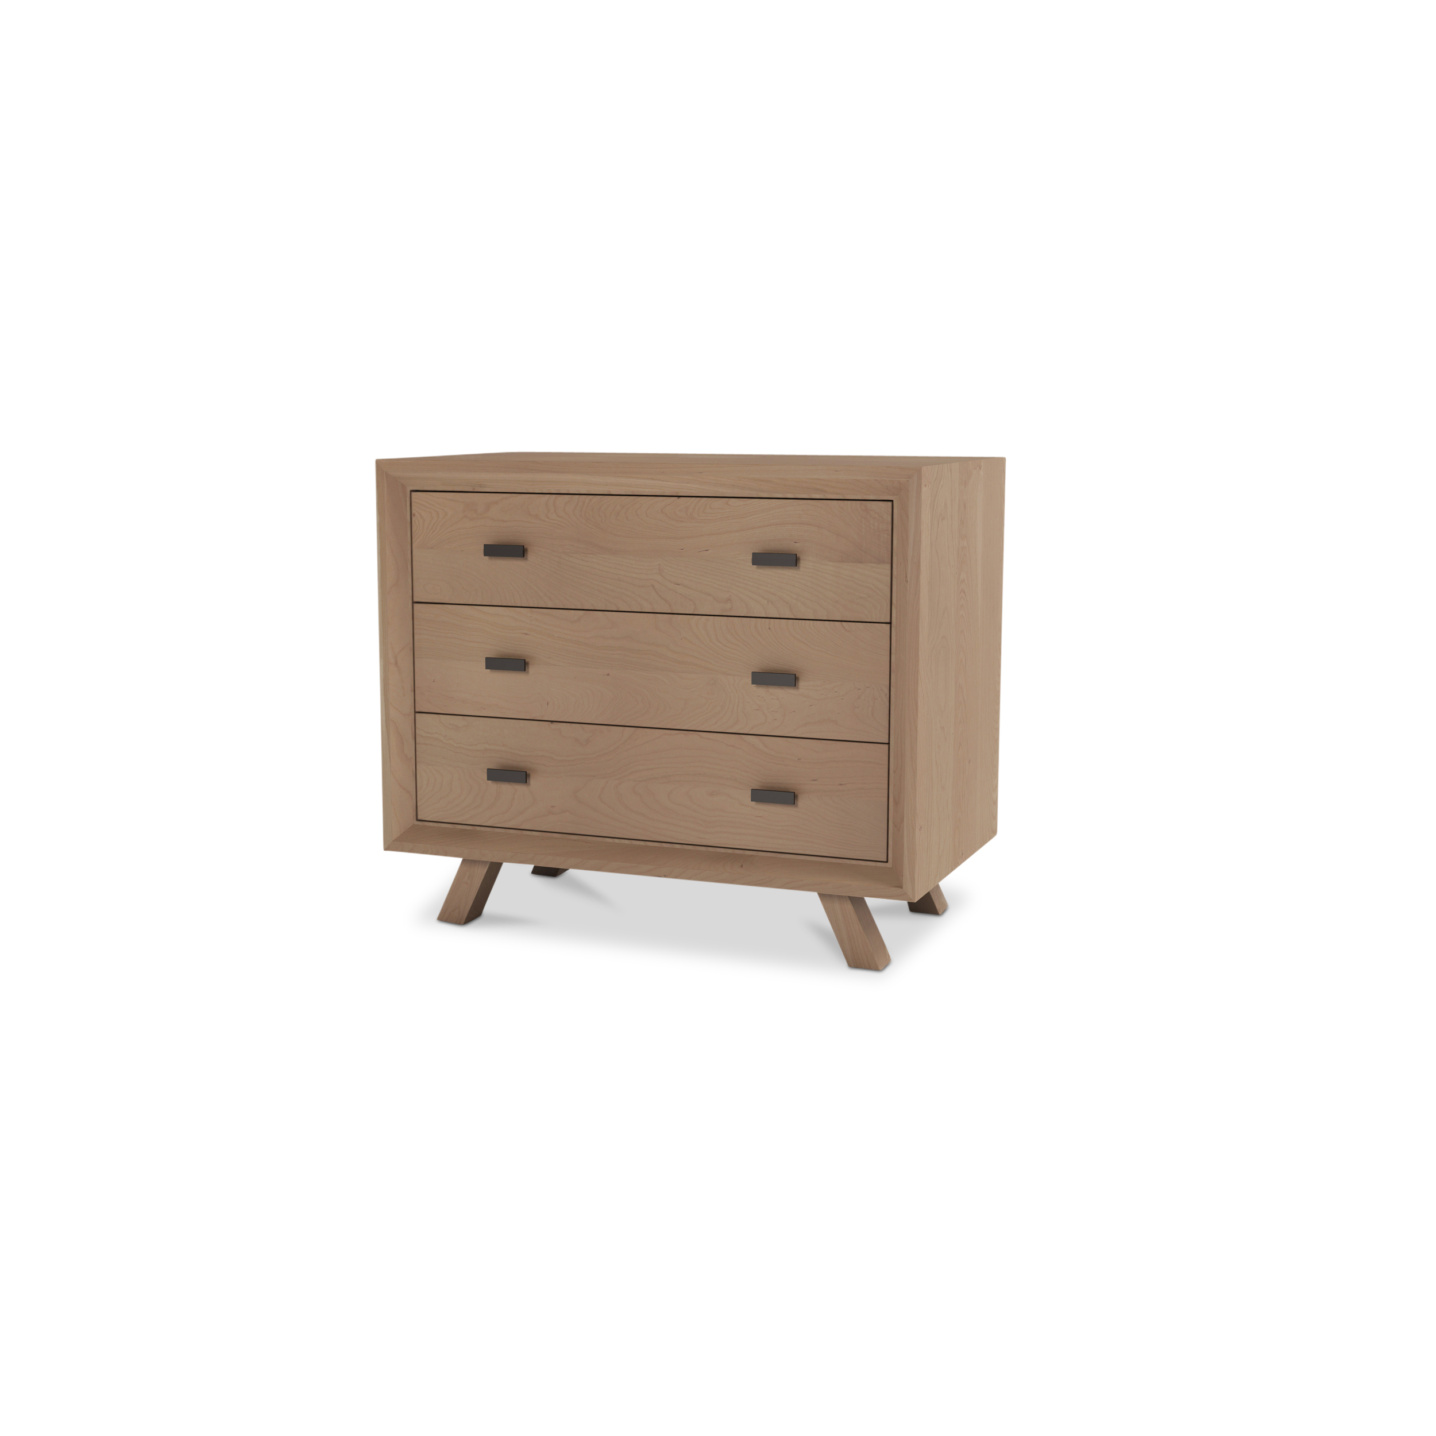 Danish 3 drawer cherry wood dresser